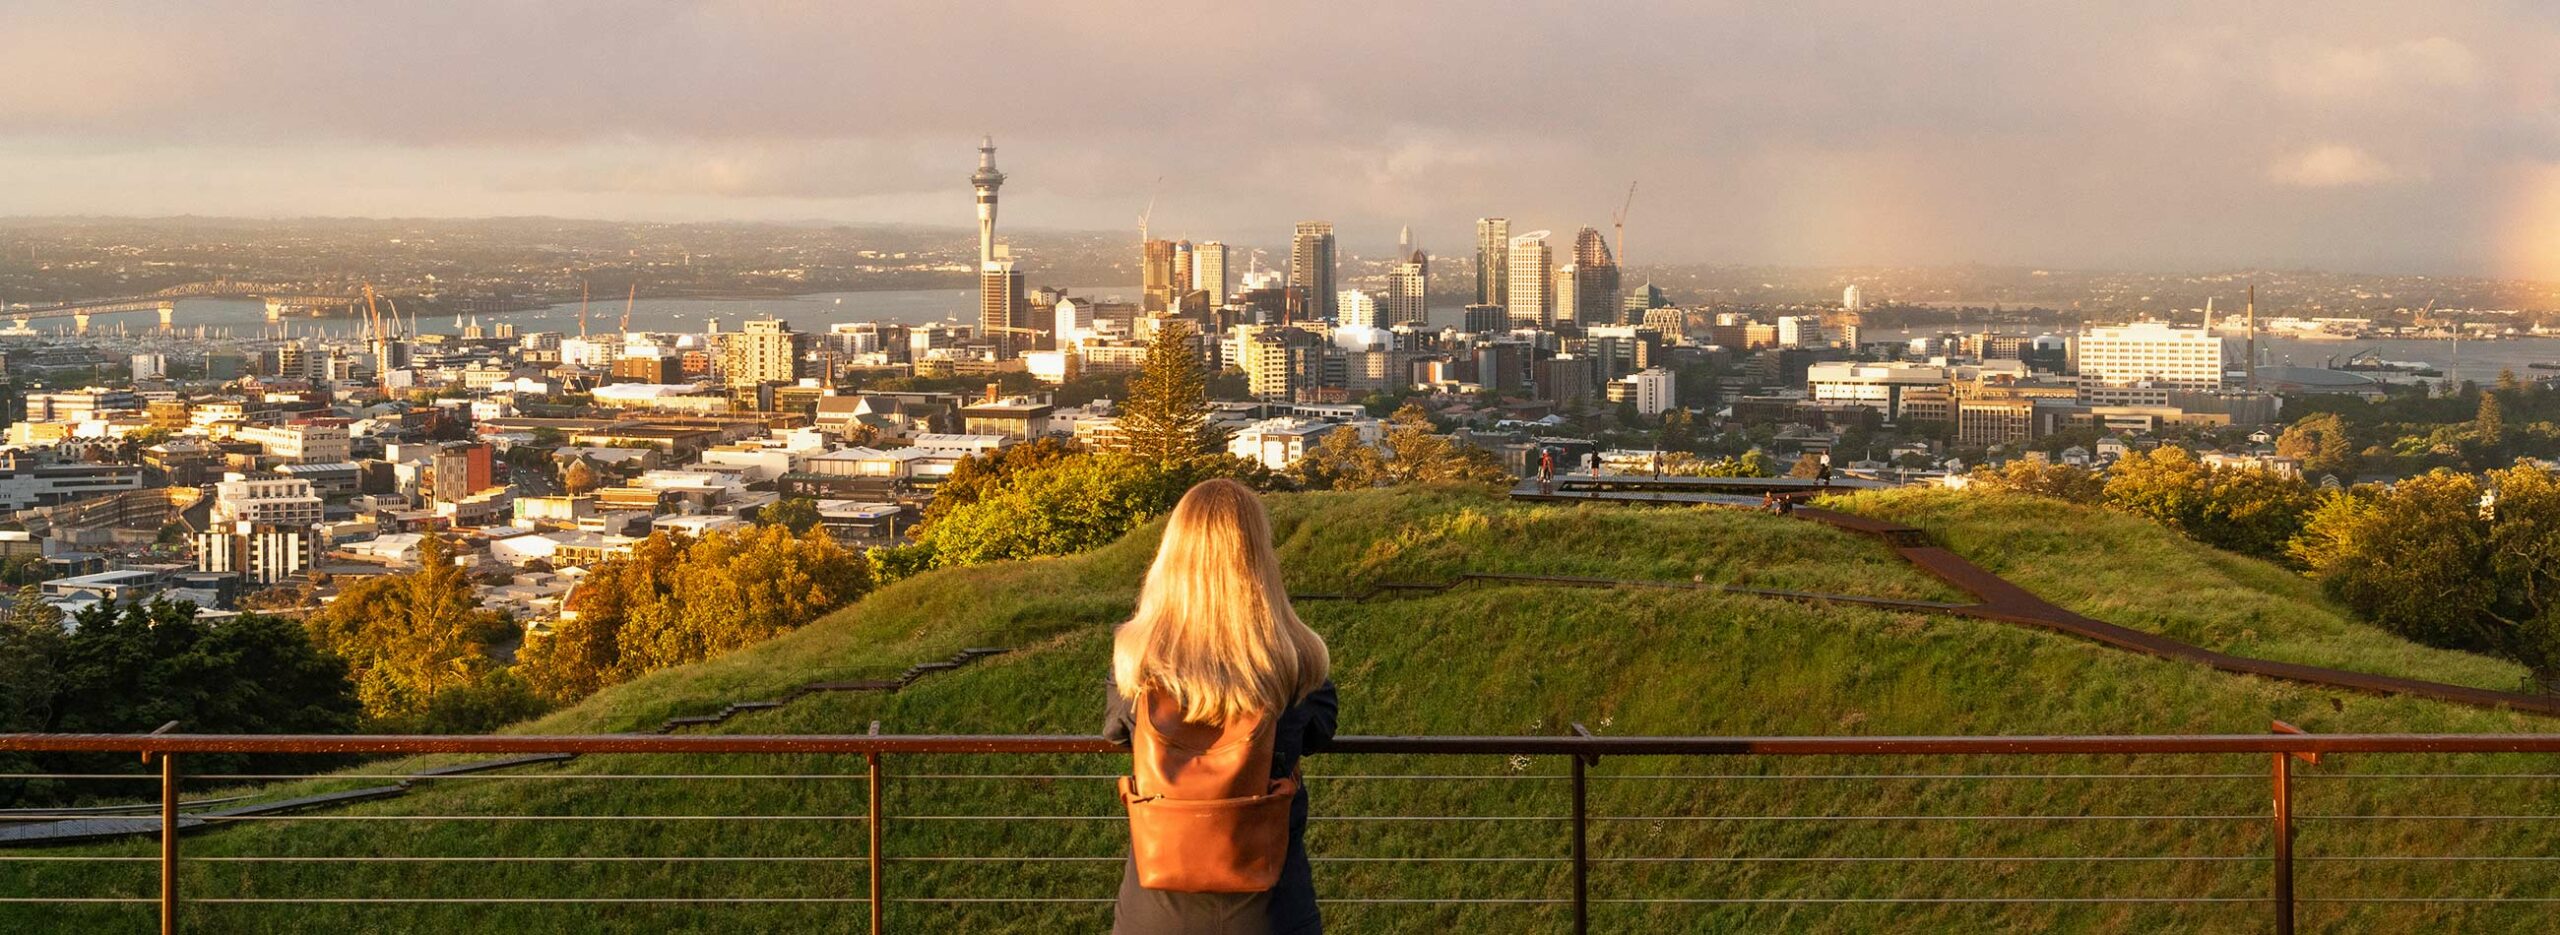 Vue depuis mont Eden ou Maungawhau, Auckland, Nouvelle-Zélande / View from Mount Eden or Maungawhau, Auckland, New Zealand, NZ